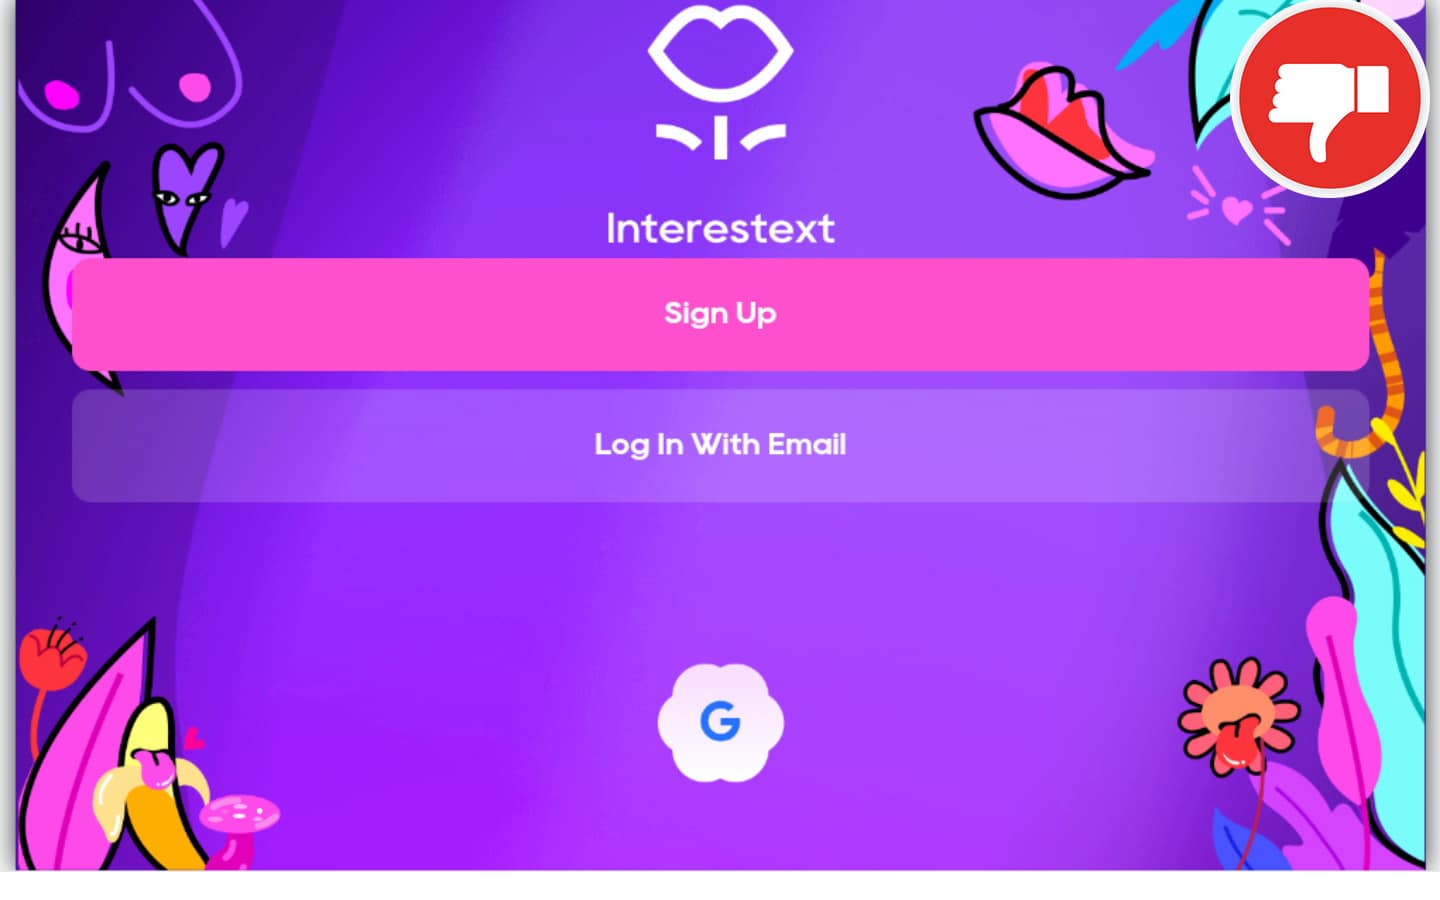 Review InteresText.com scam experience